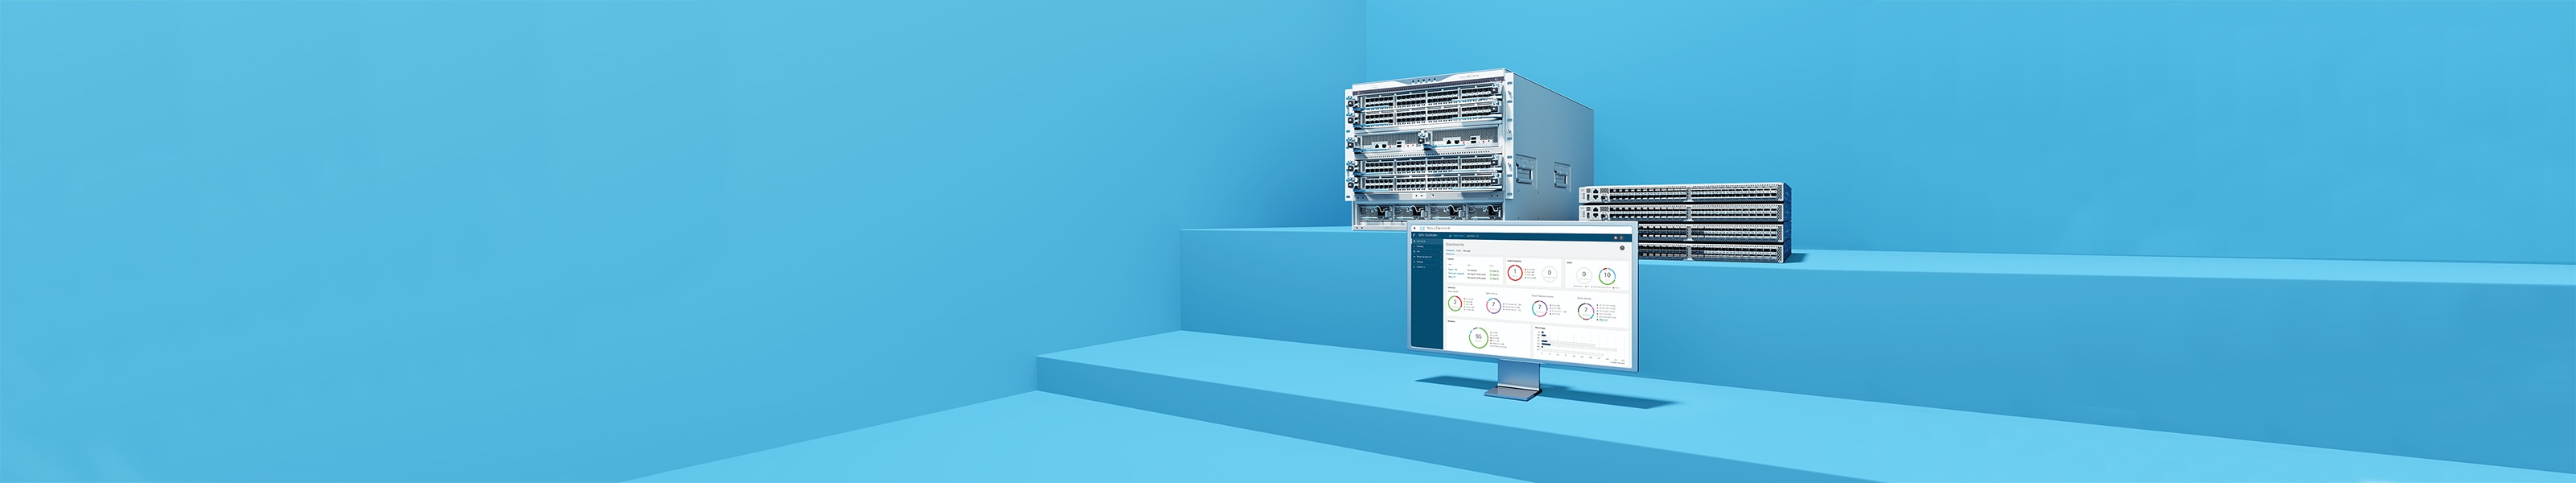 Storage Area Networking-Lösung der MDS 9000 Serie, einschließlich Switches und Dashboard